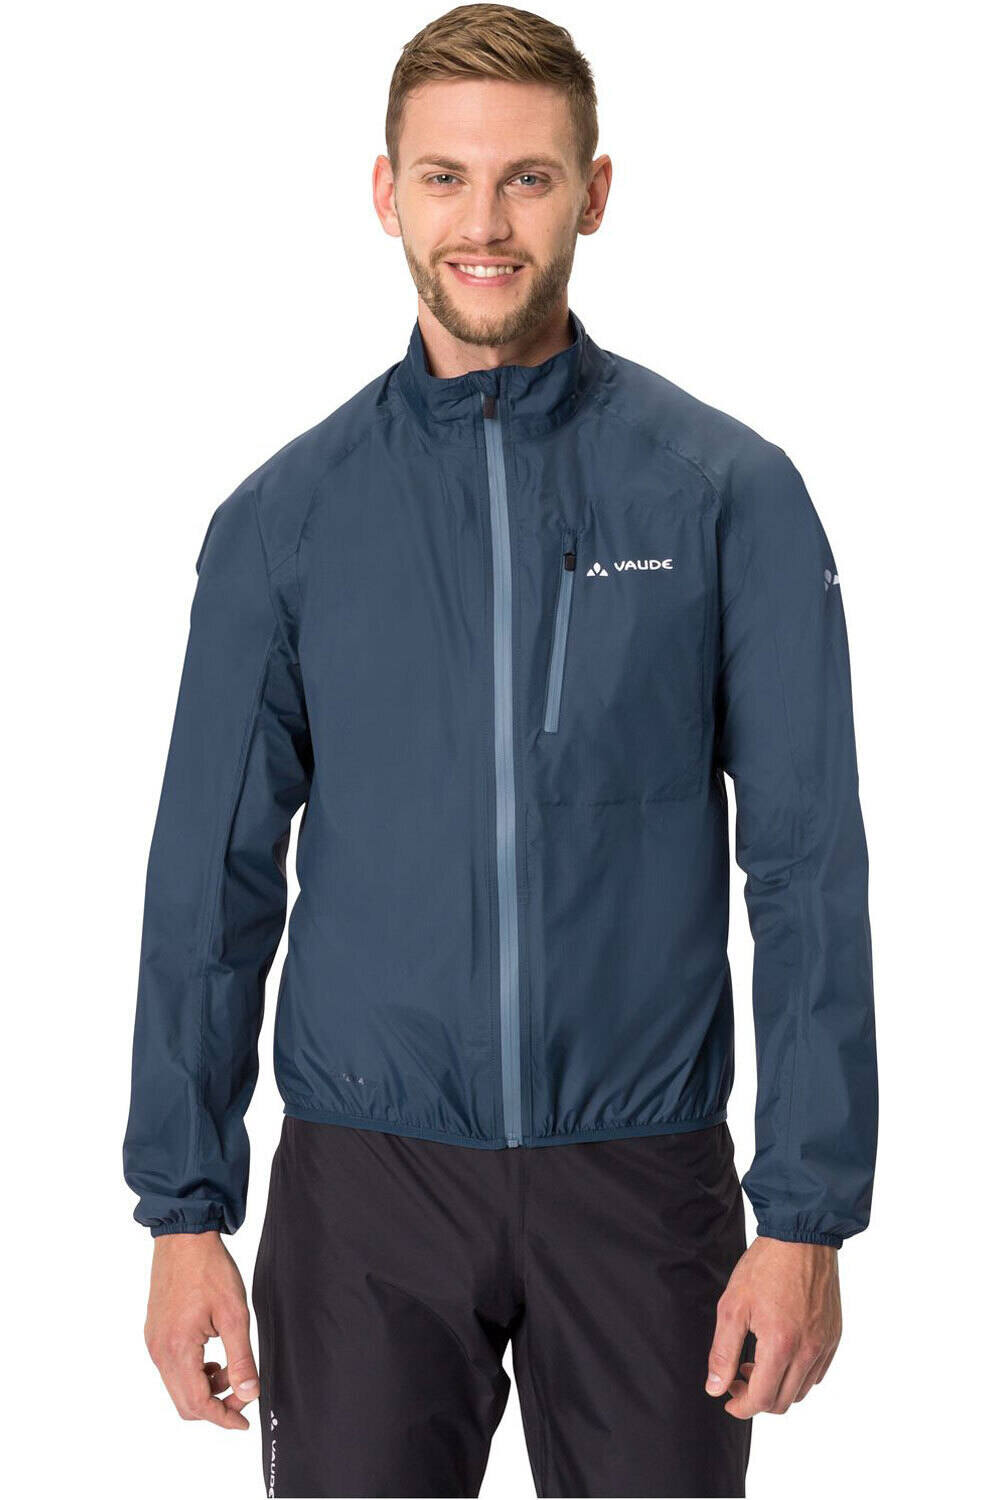 Vaude chaqueta impermeable ciclismo hombre Men's Drop Jacket III vista frontal